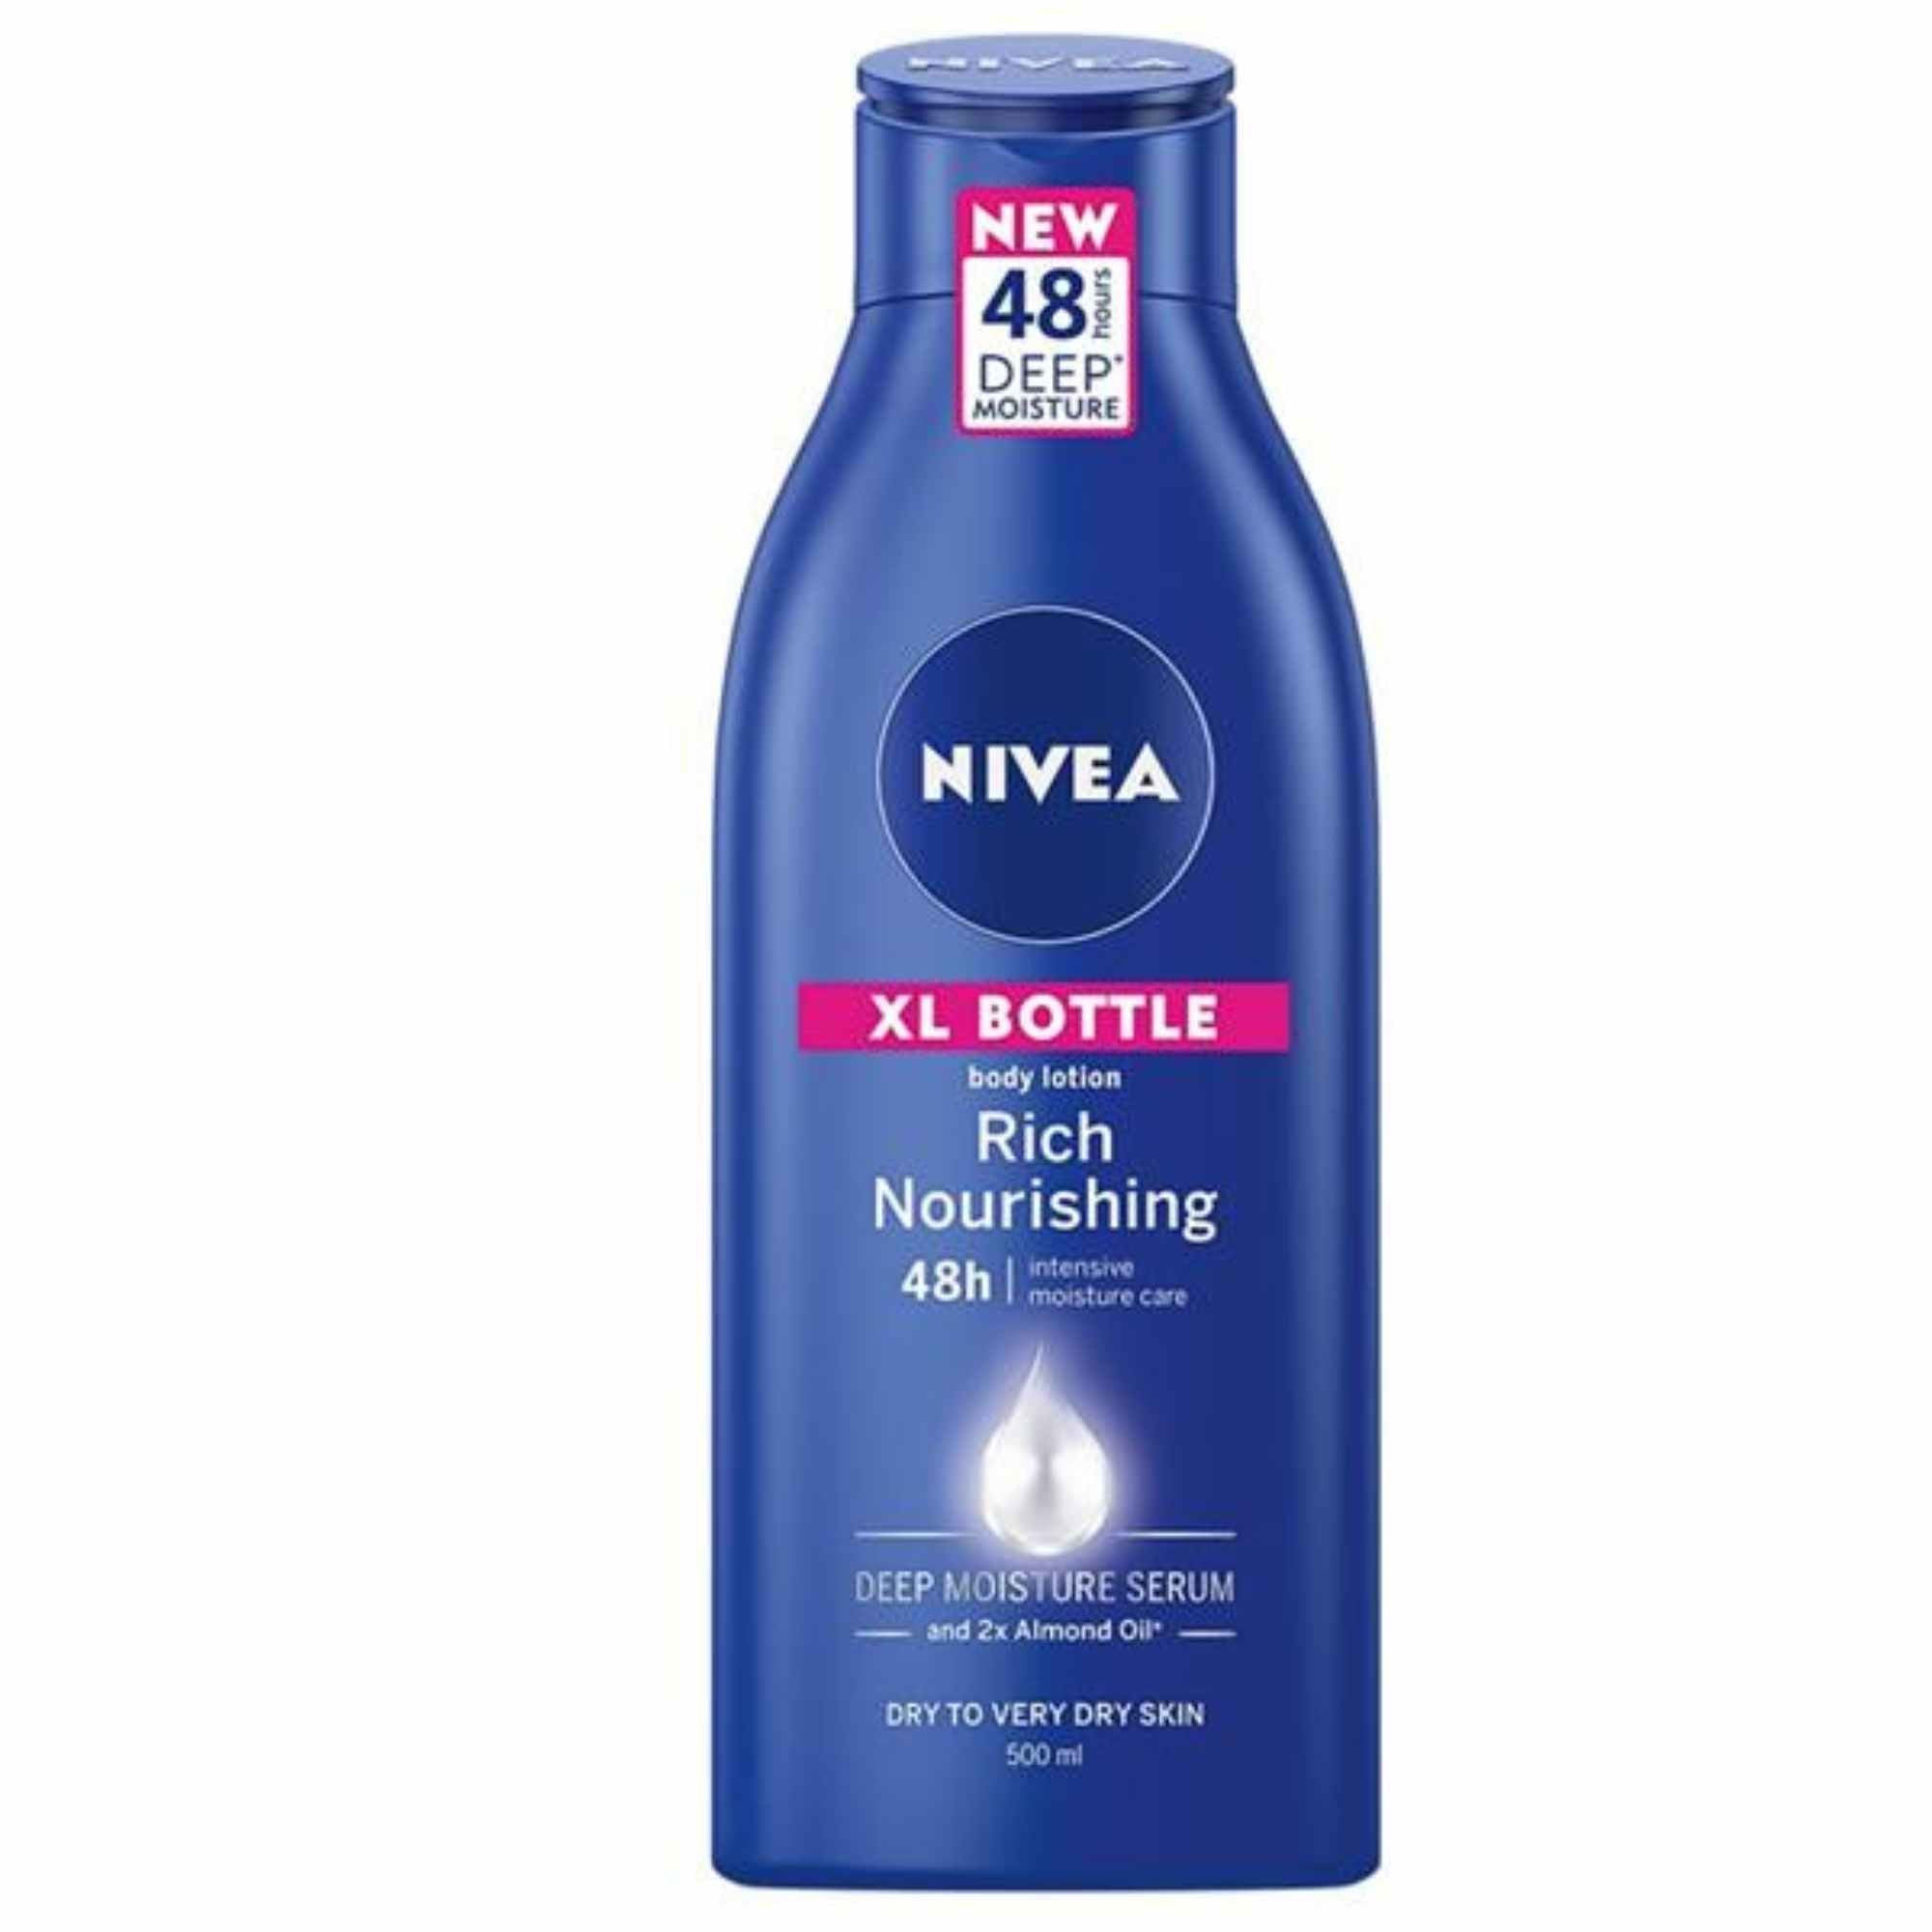 Nivea Rich Nourishing Body Lotion XL Bottle - 500ml